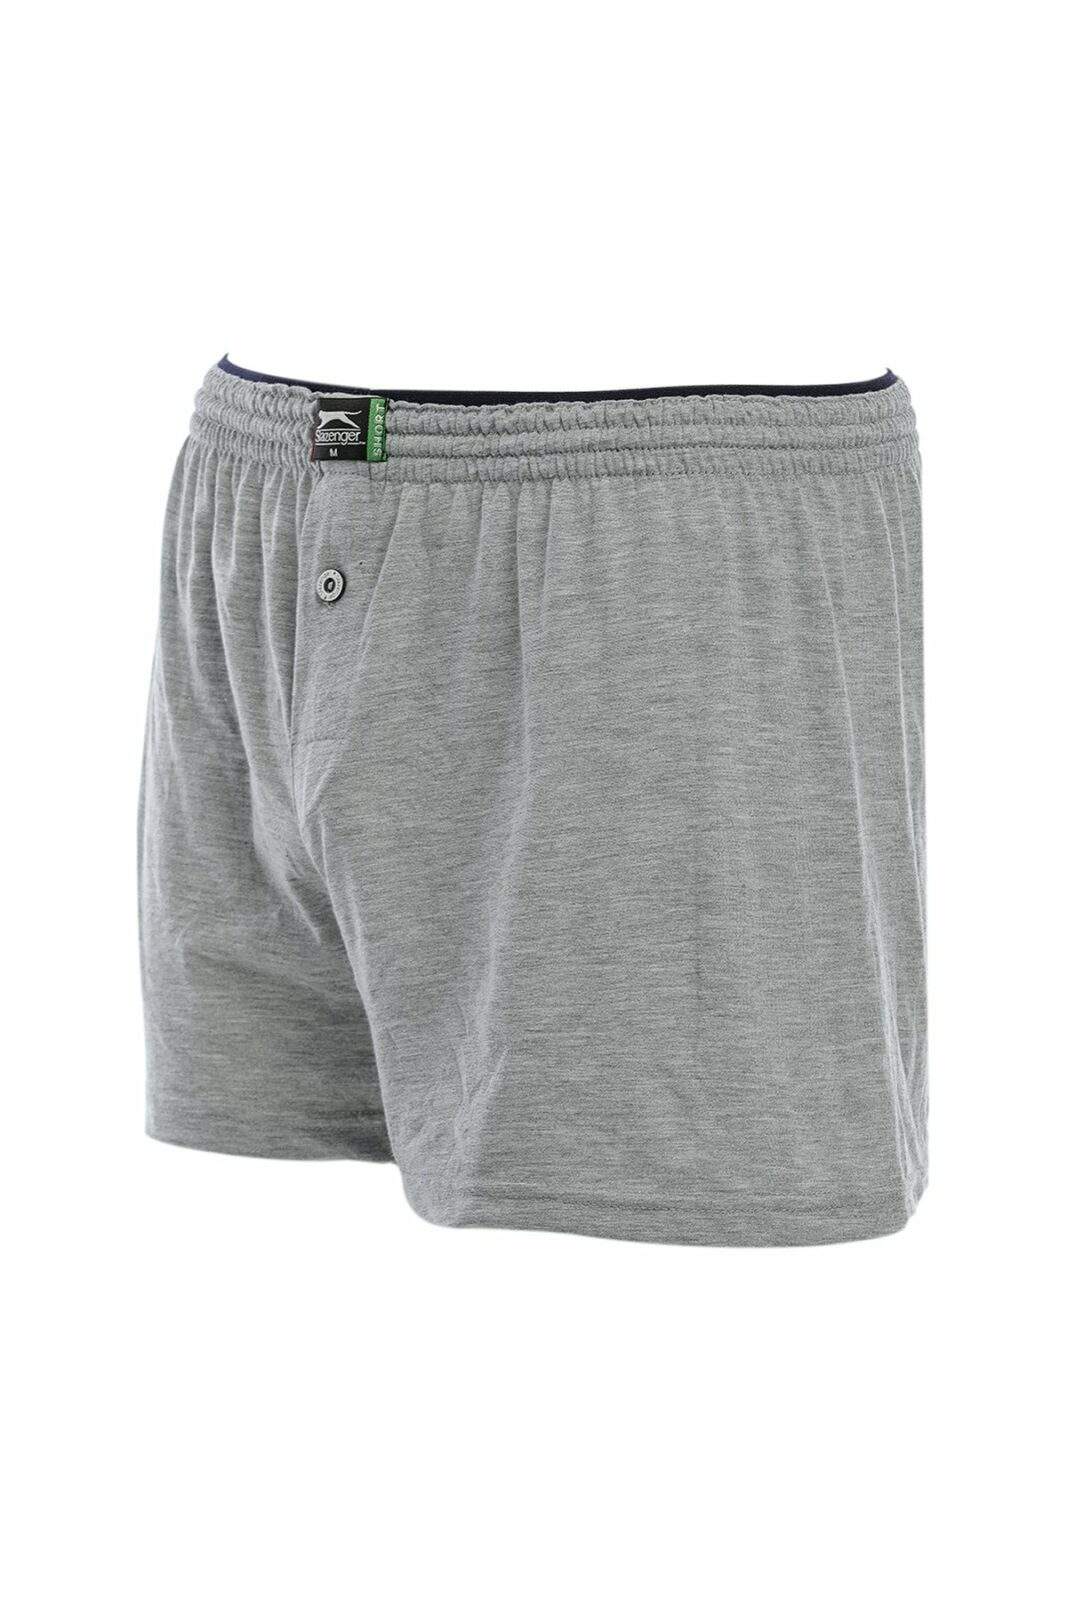 Slazenger Boxer Shorts - Gray